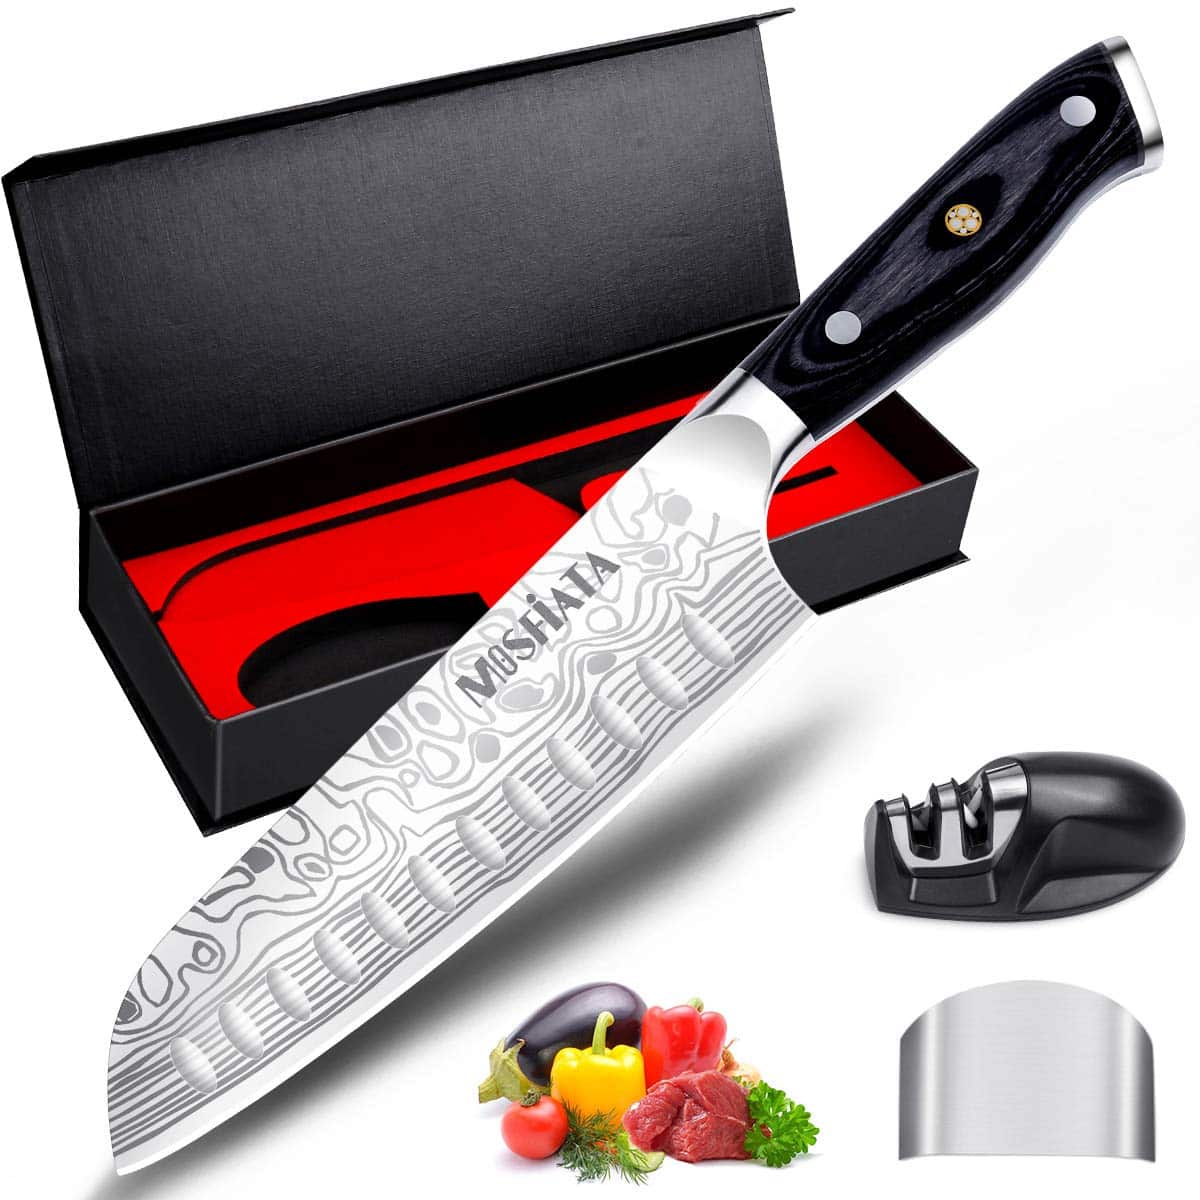 MOSFiATA 7" Chef Knife